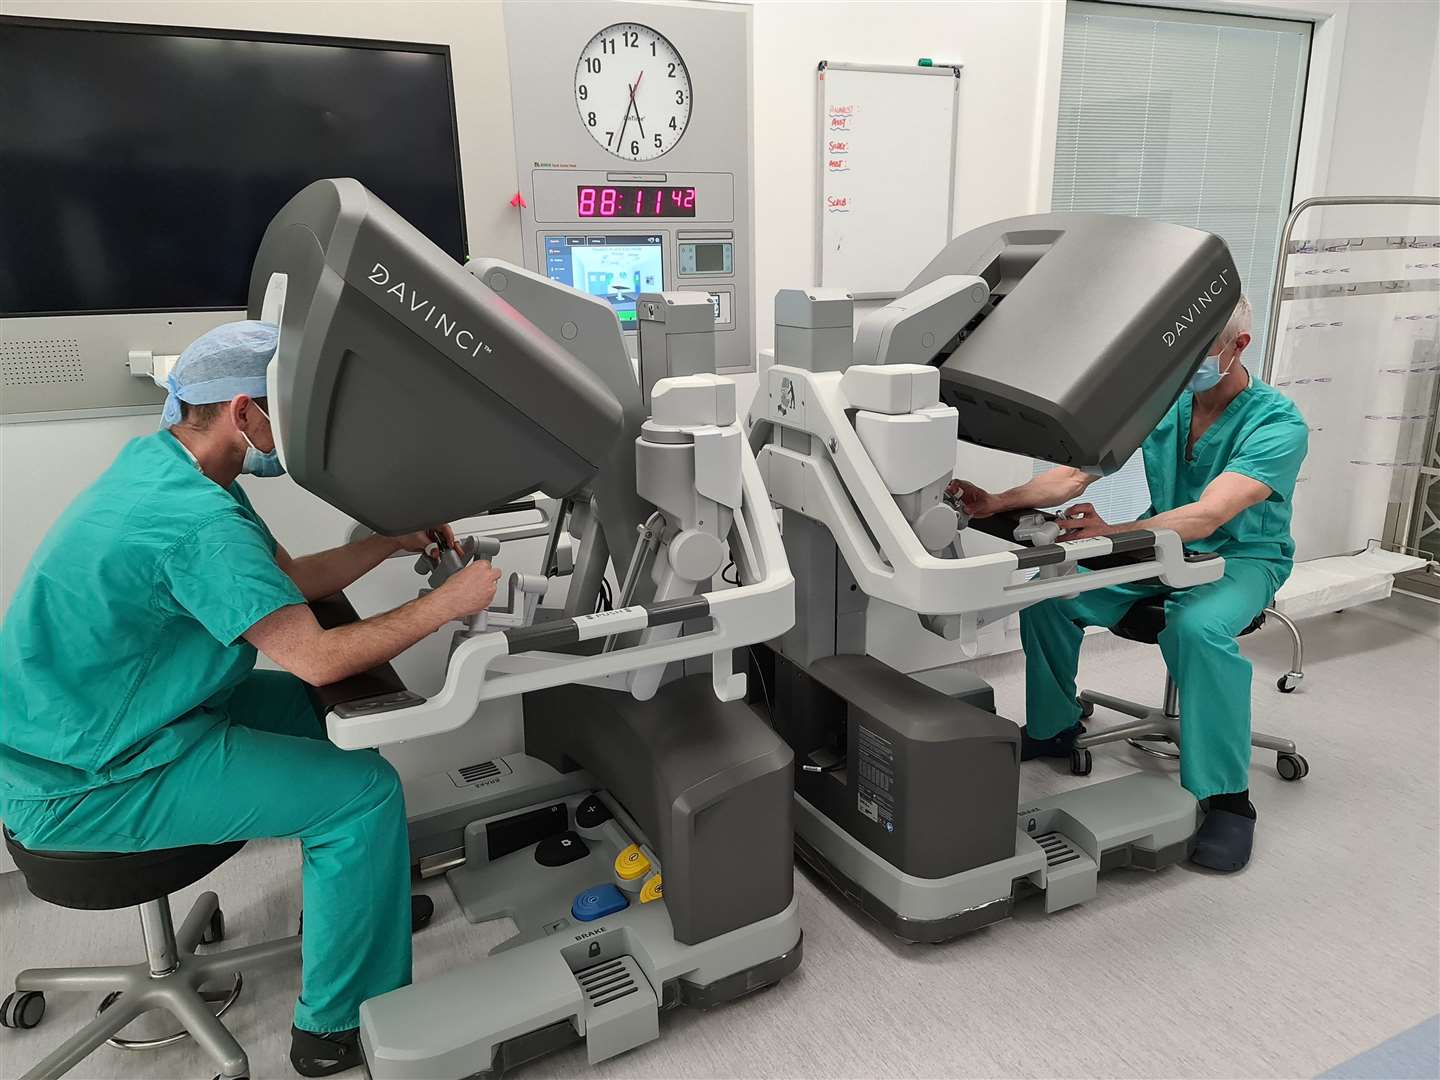 Operating the DaVinci Xi robotic surgery